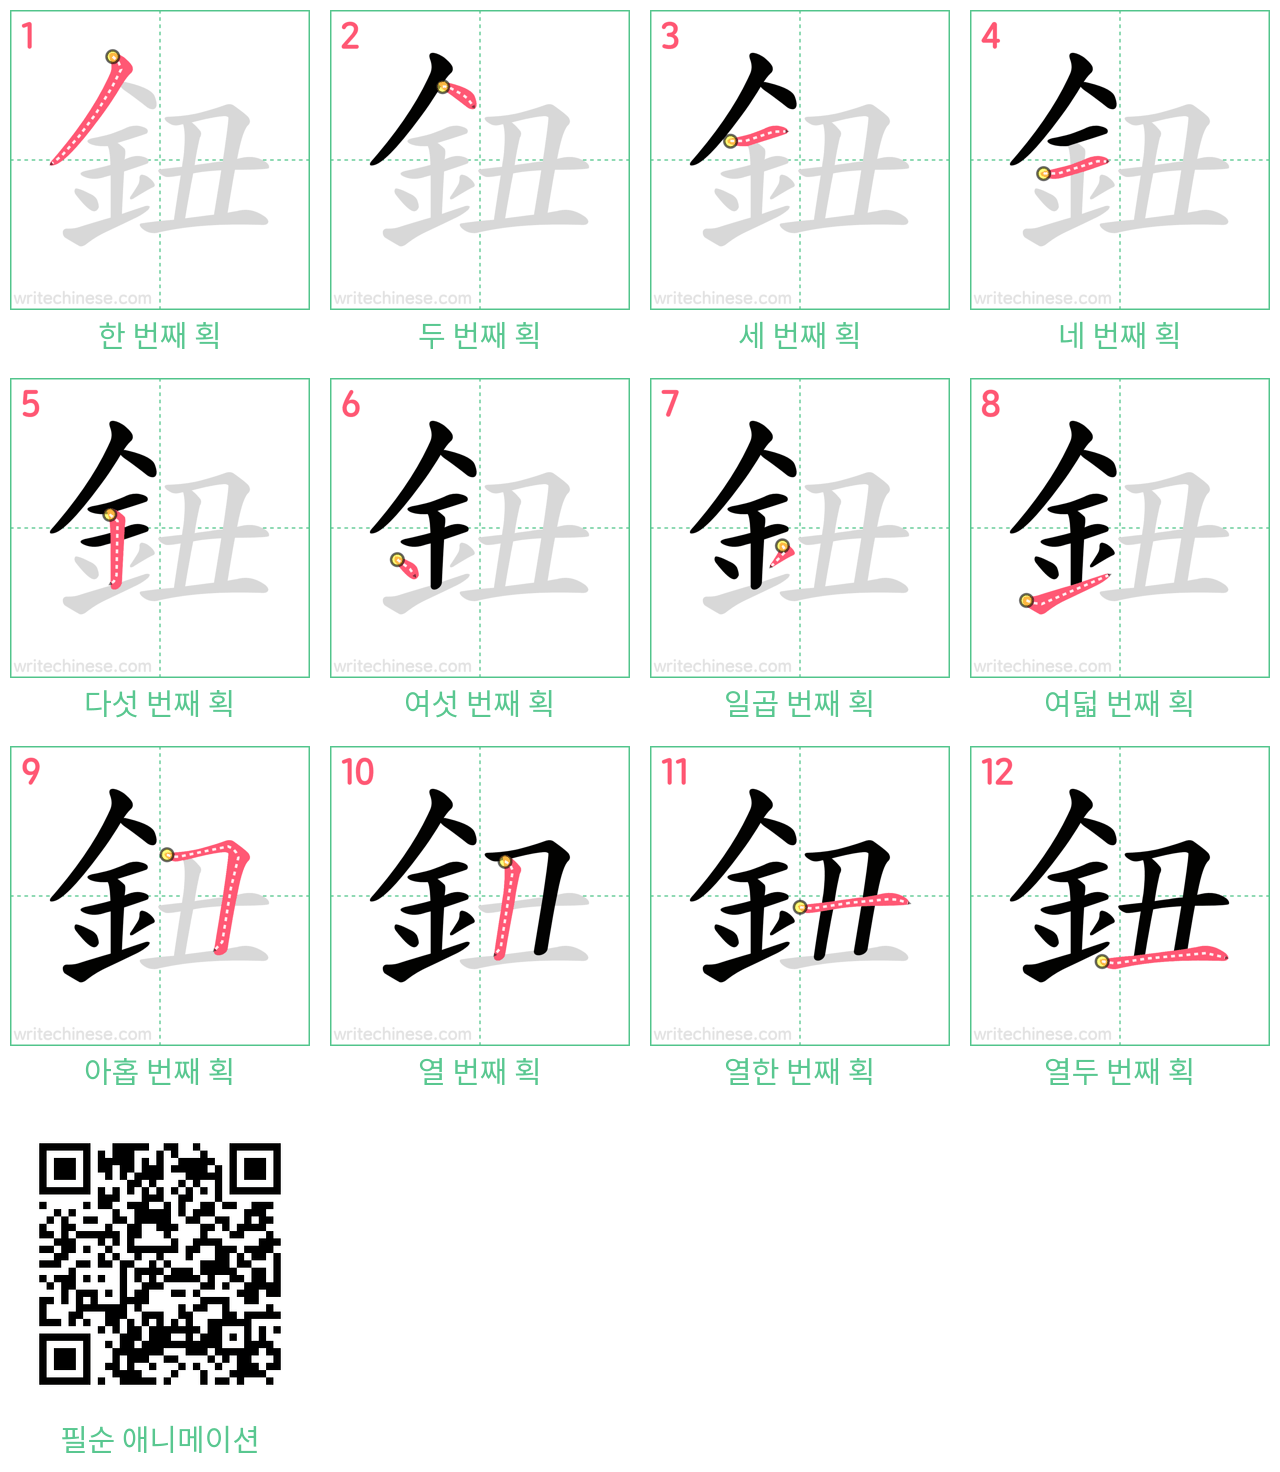 鈕 step-by-step stroke order diagrams